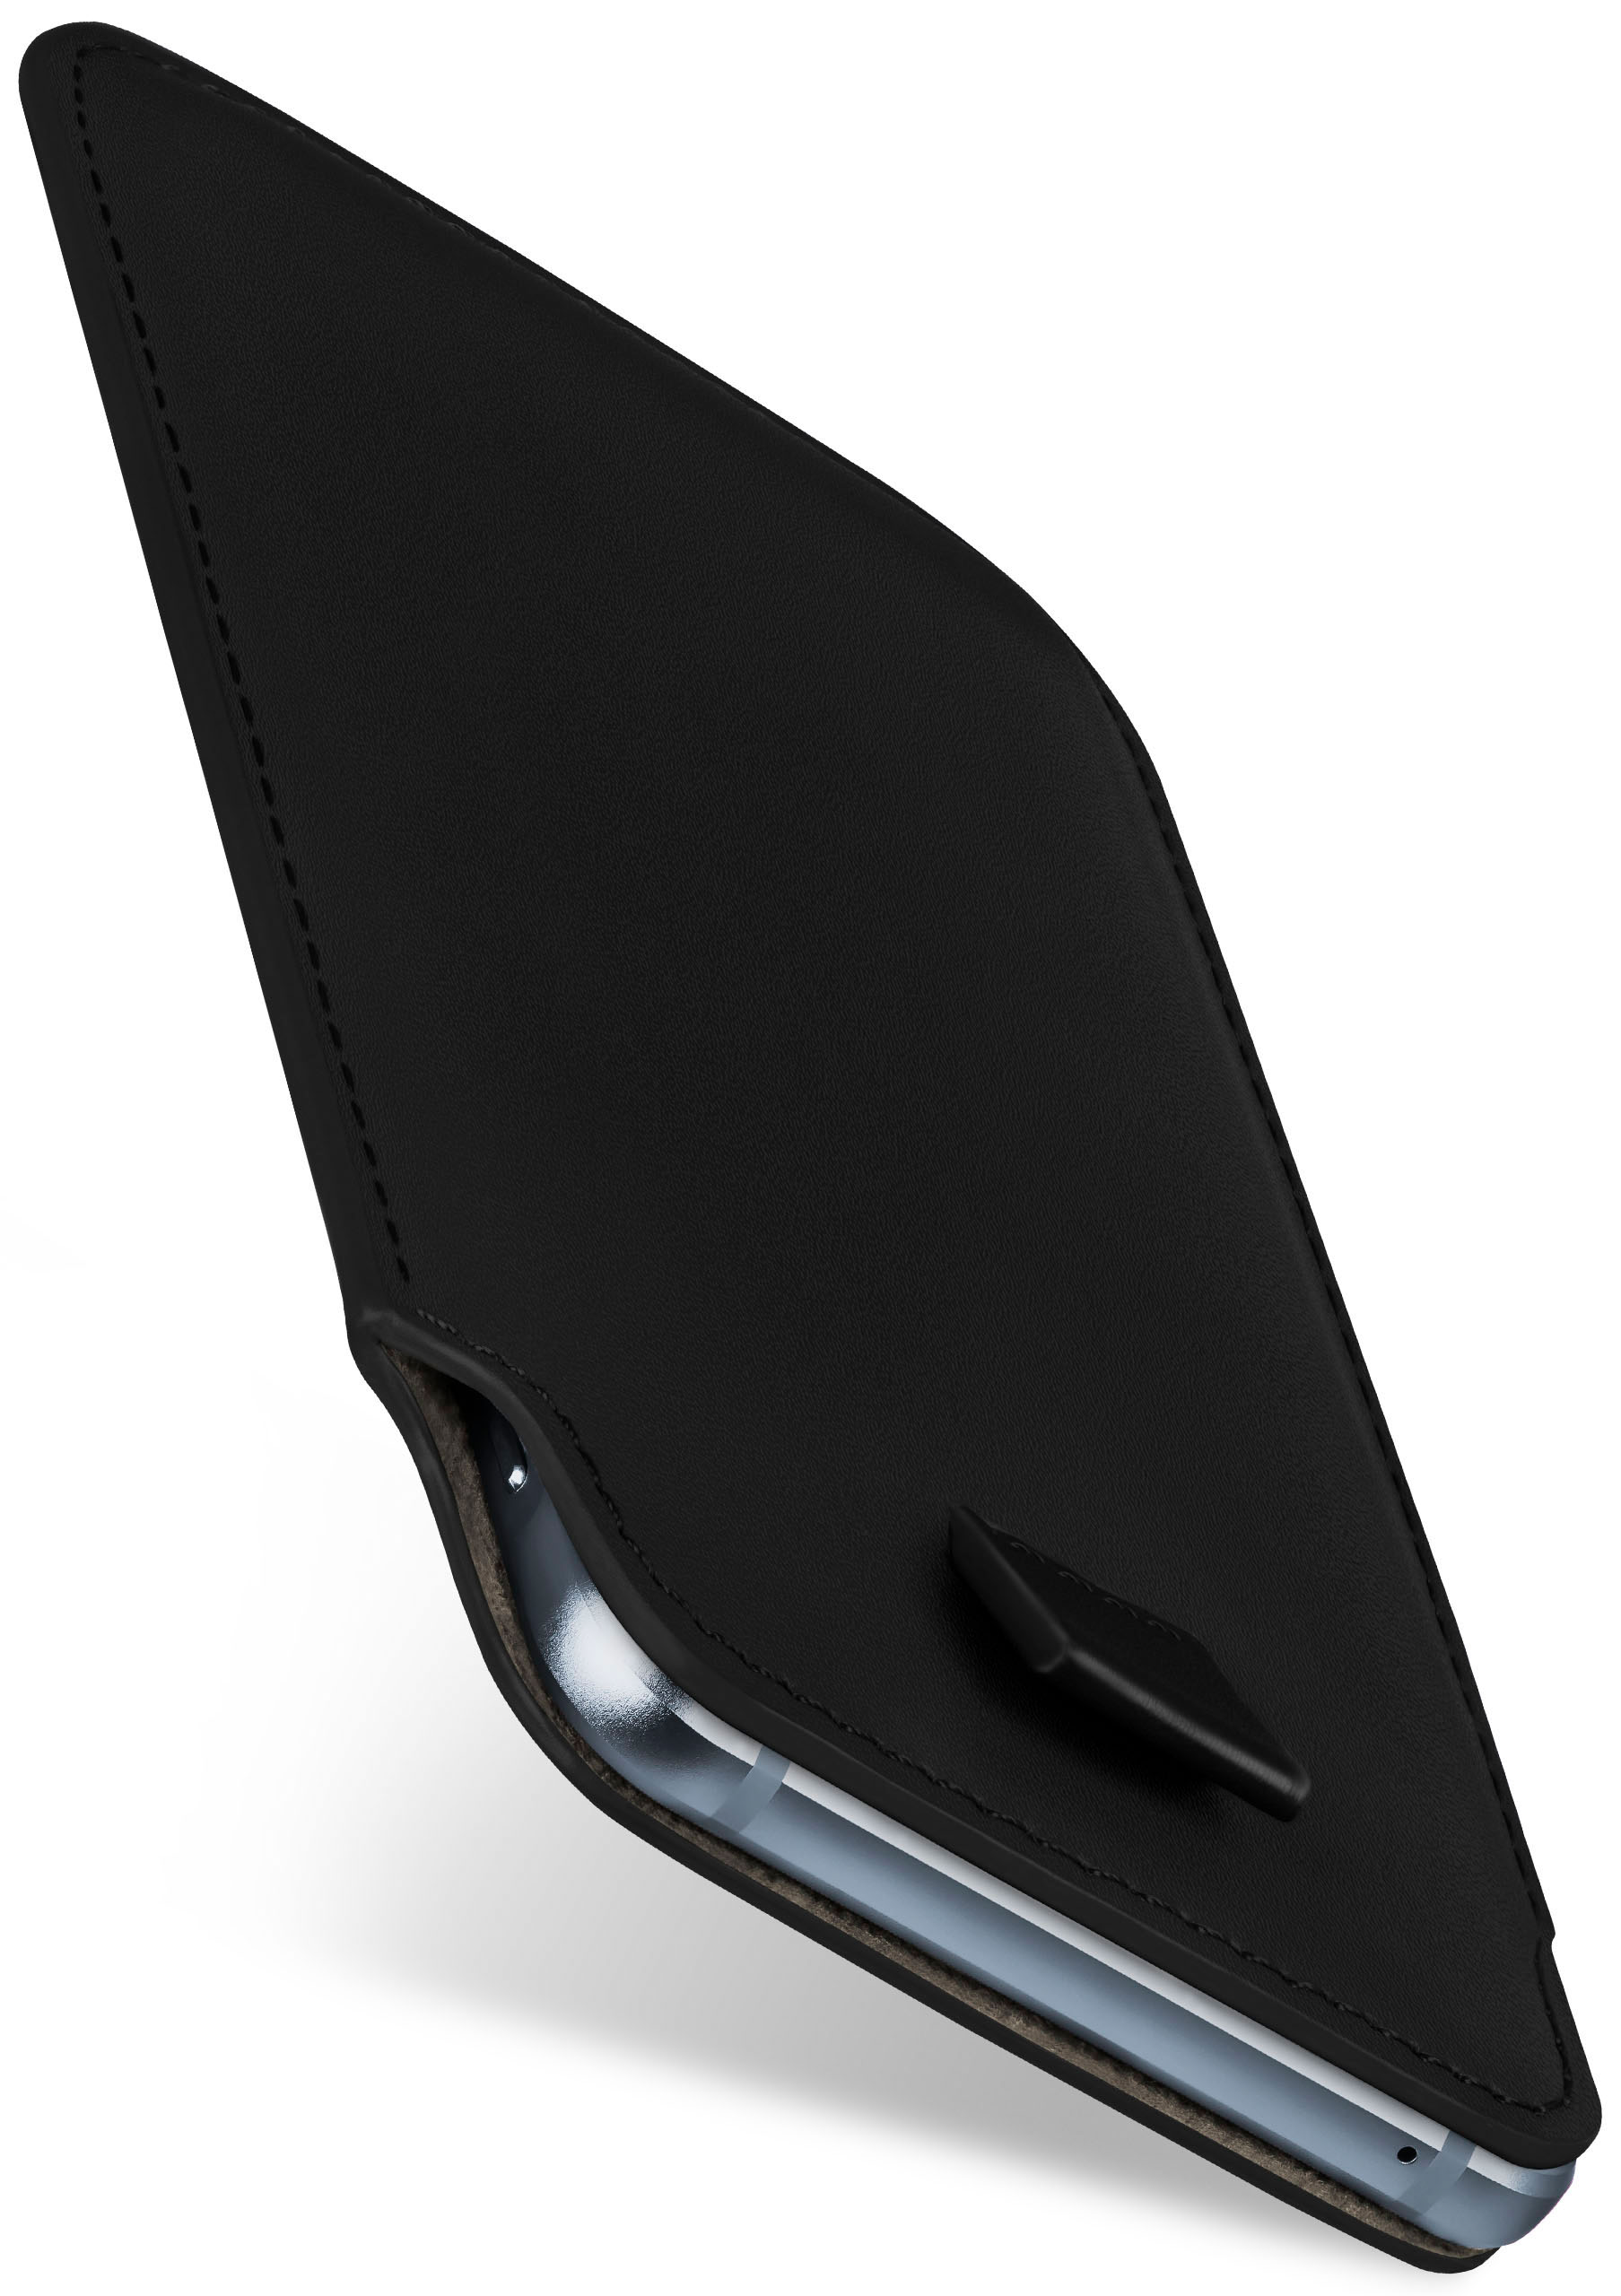 Deep-Black Liquid Case, Z6 Acer, Slide MOEX Plus, Full Cover,